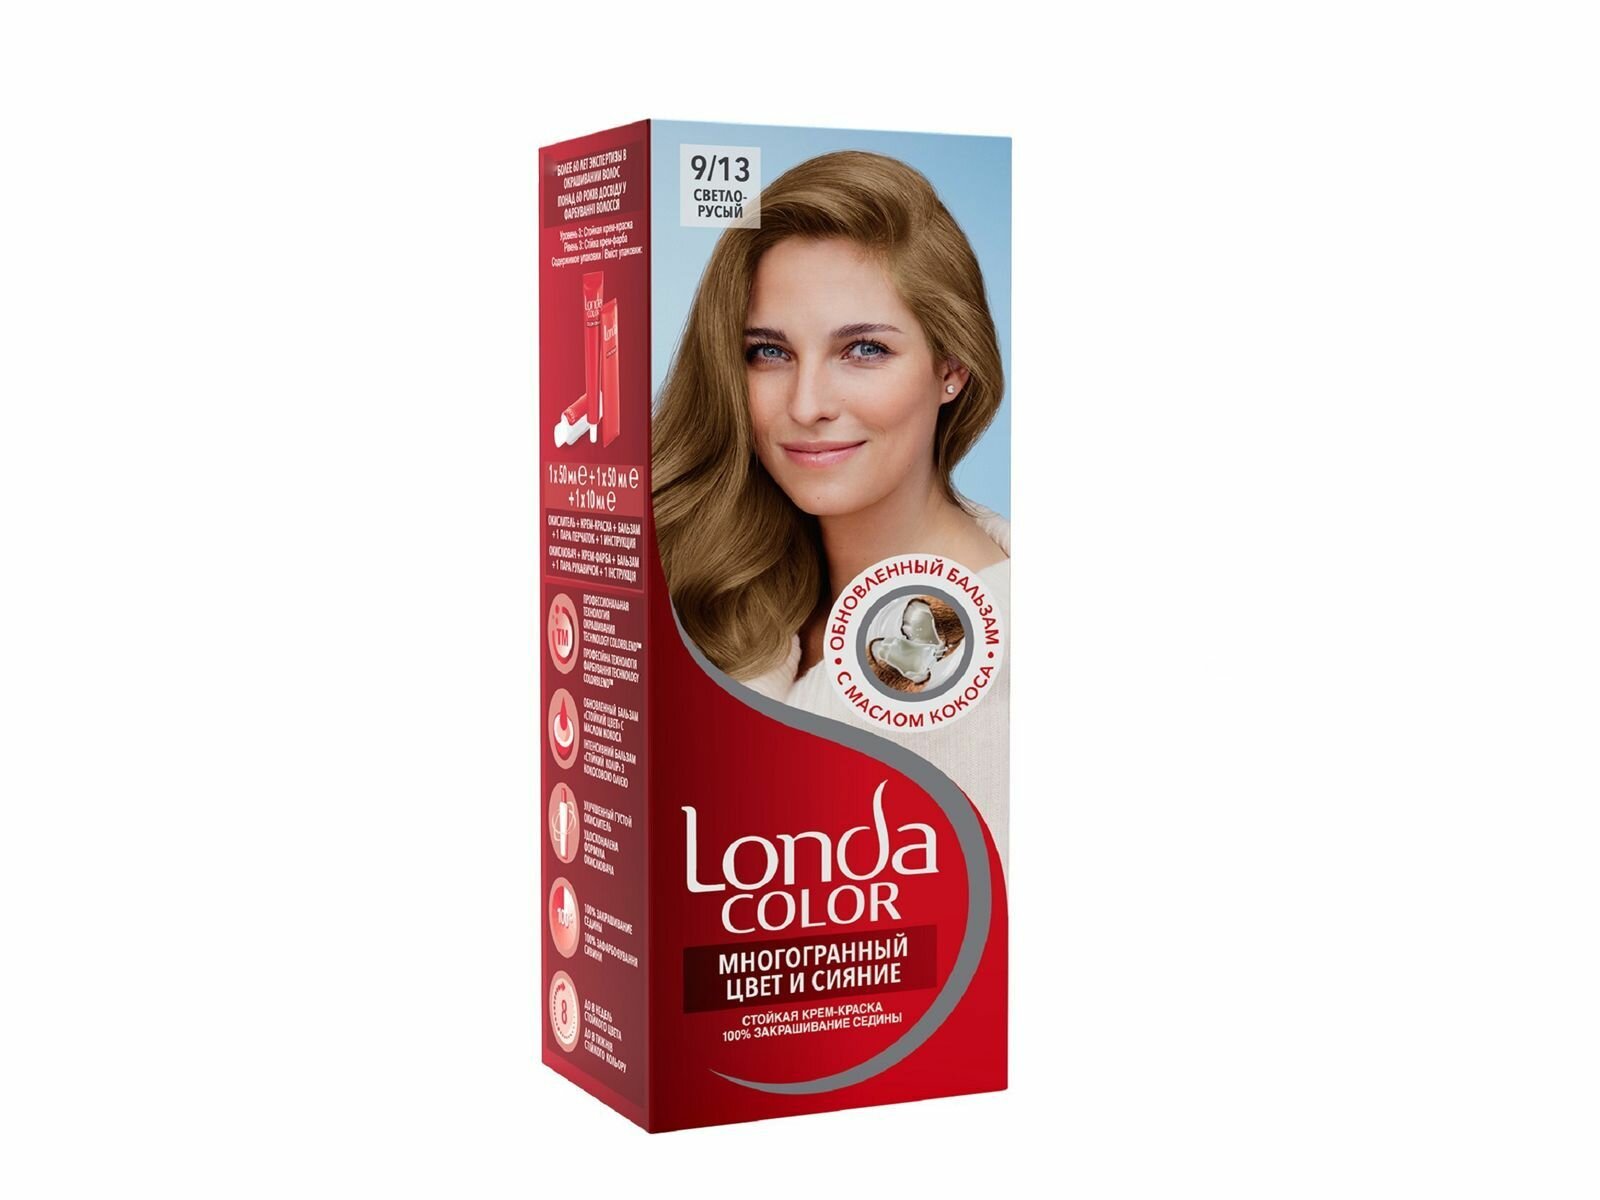 Londa color 9/13 светло-русый краска для волос